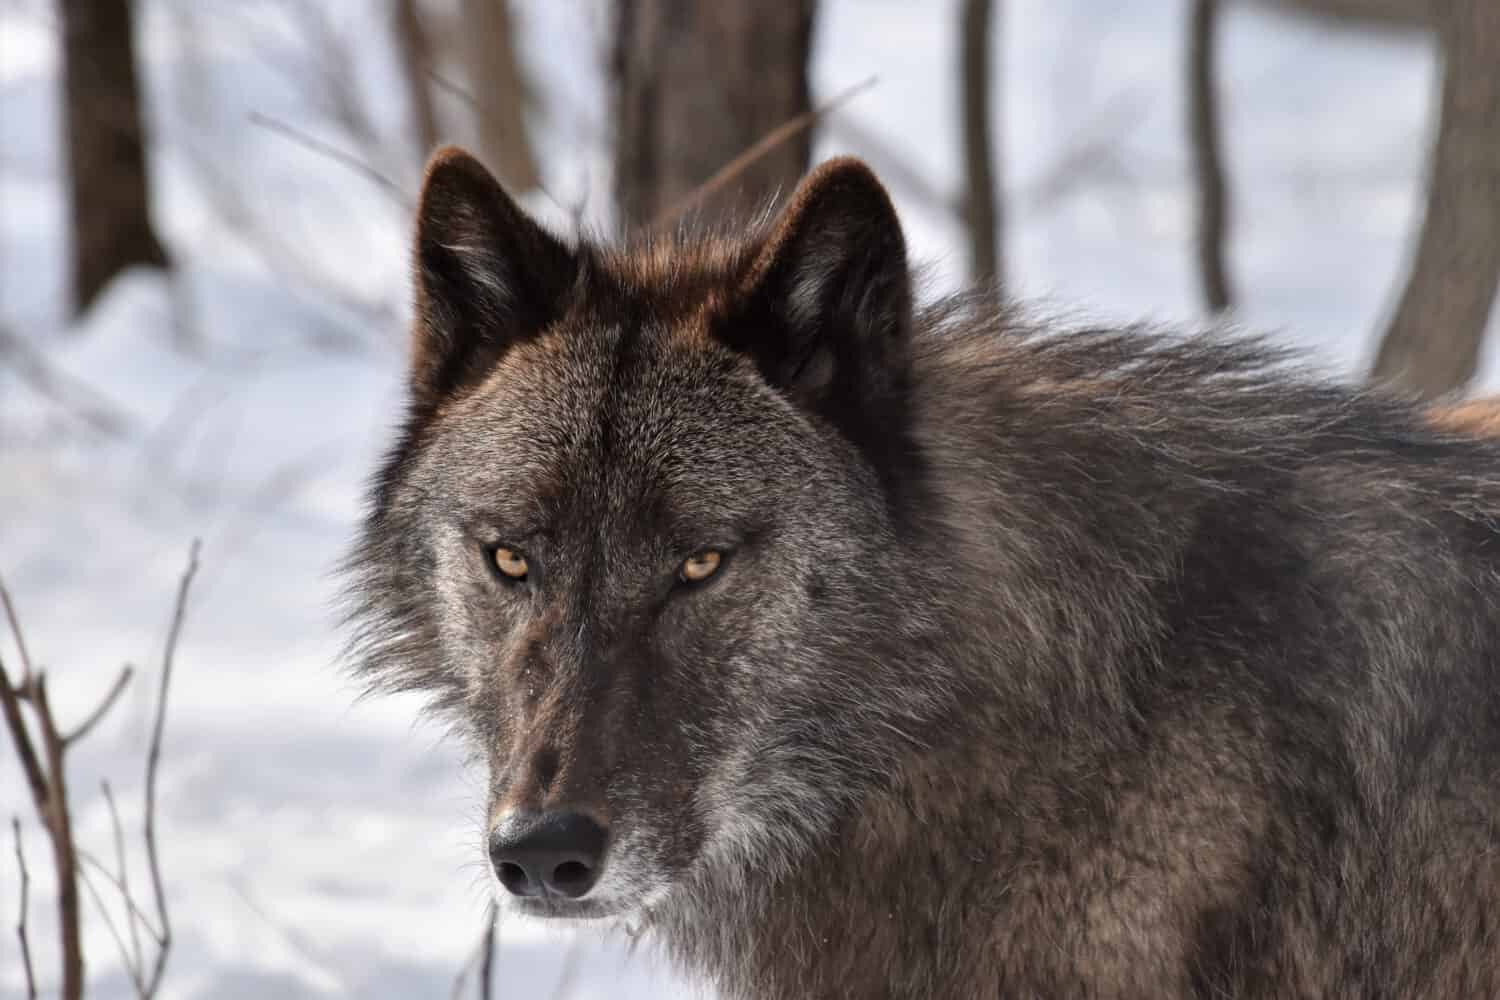 British Columbian wolf